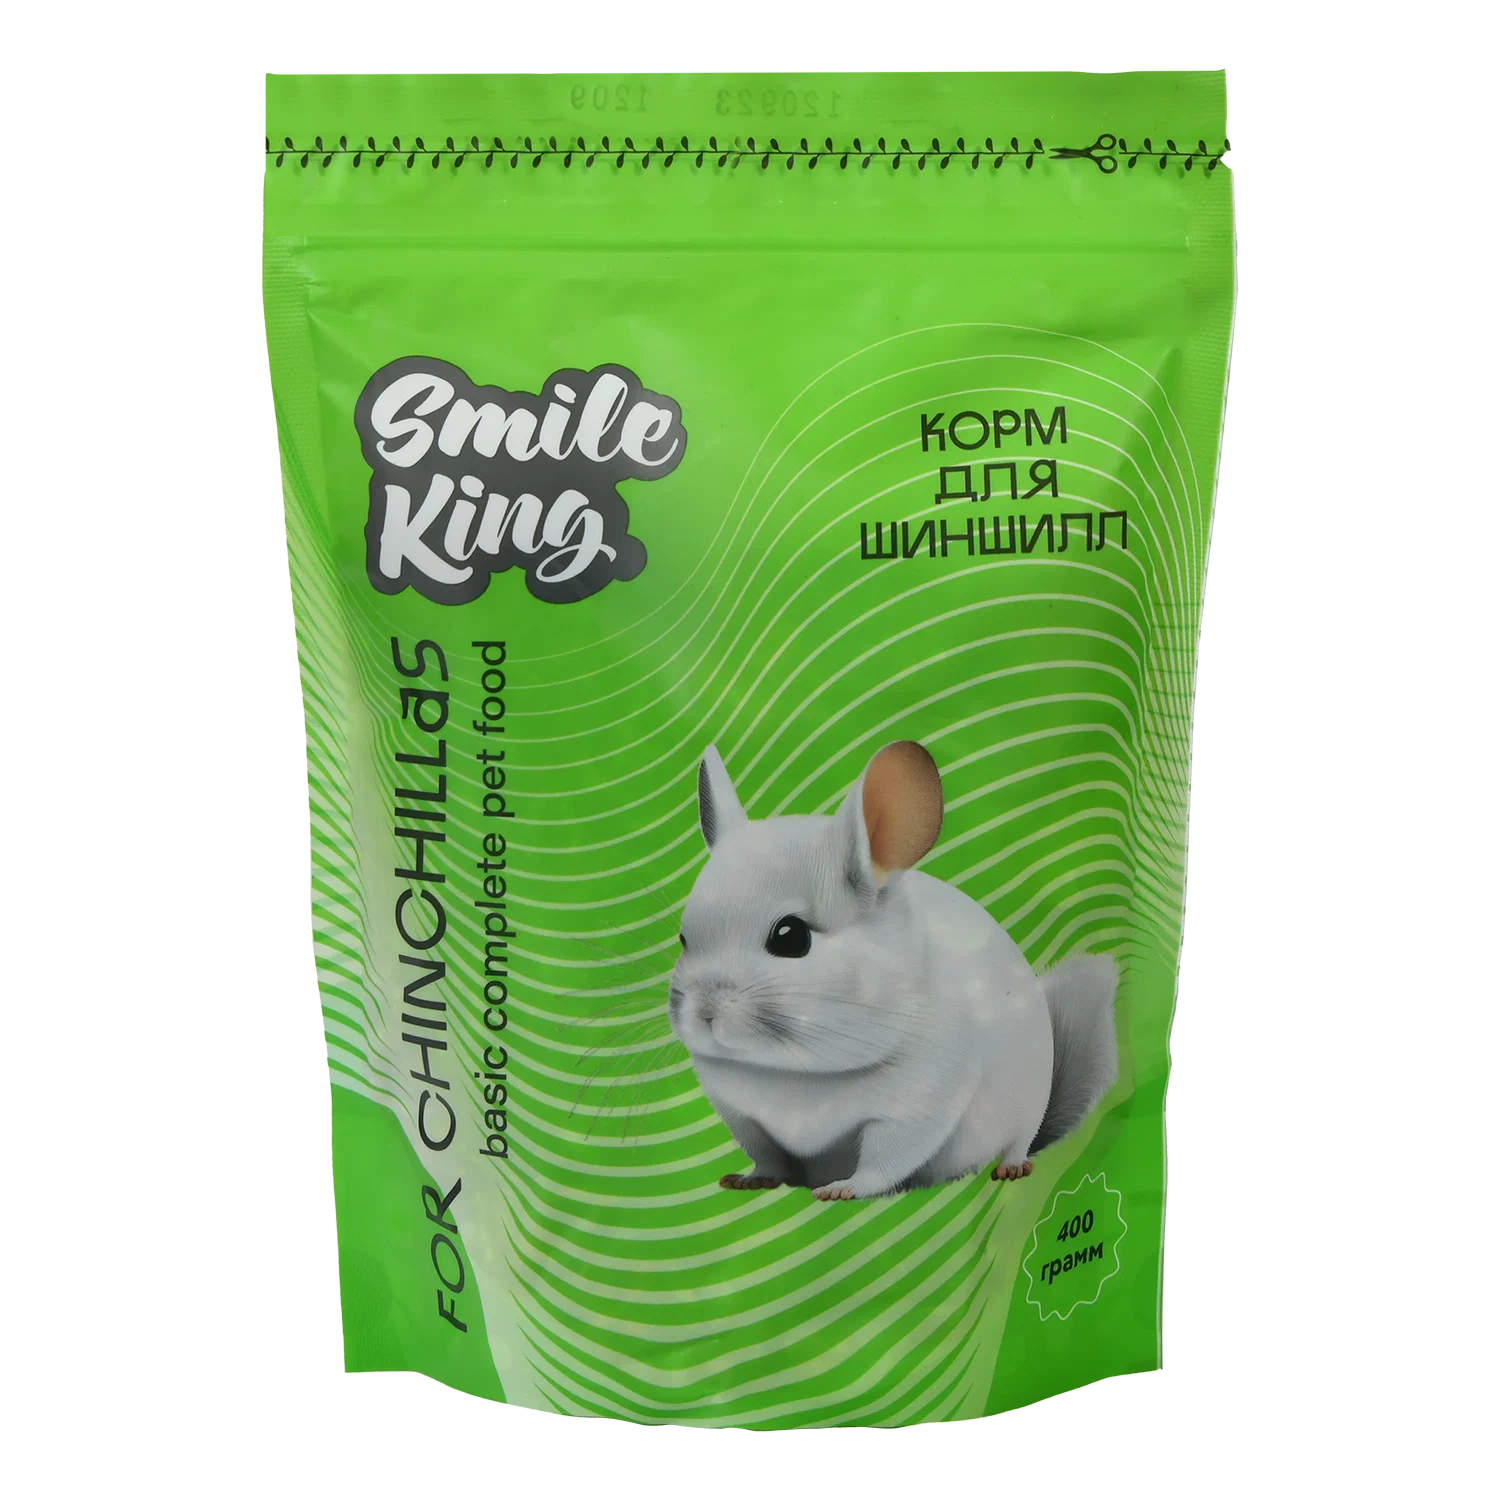 Корм для кролика smile King дой-пак пакет 600 г. Little King корм для хомяка. Корм для крыс smile King. Корма короля. Pets brunch корм